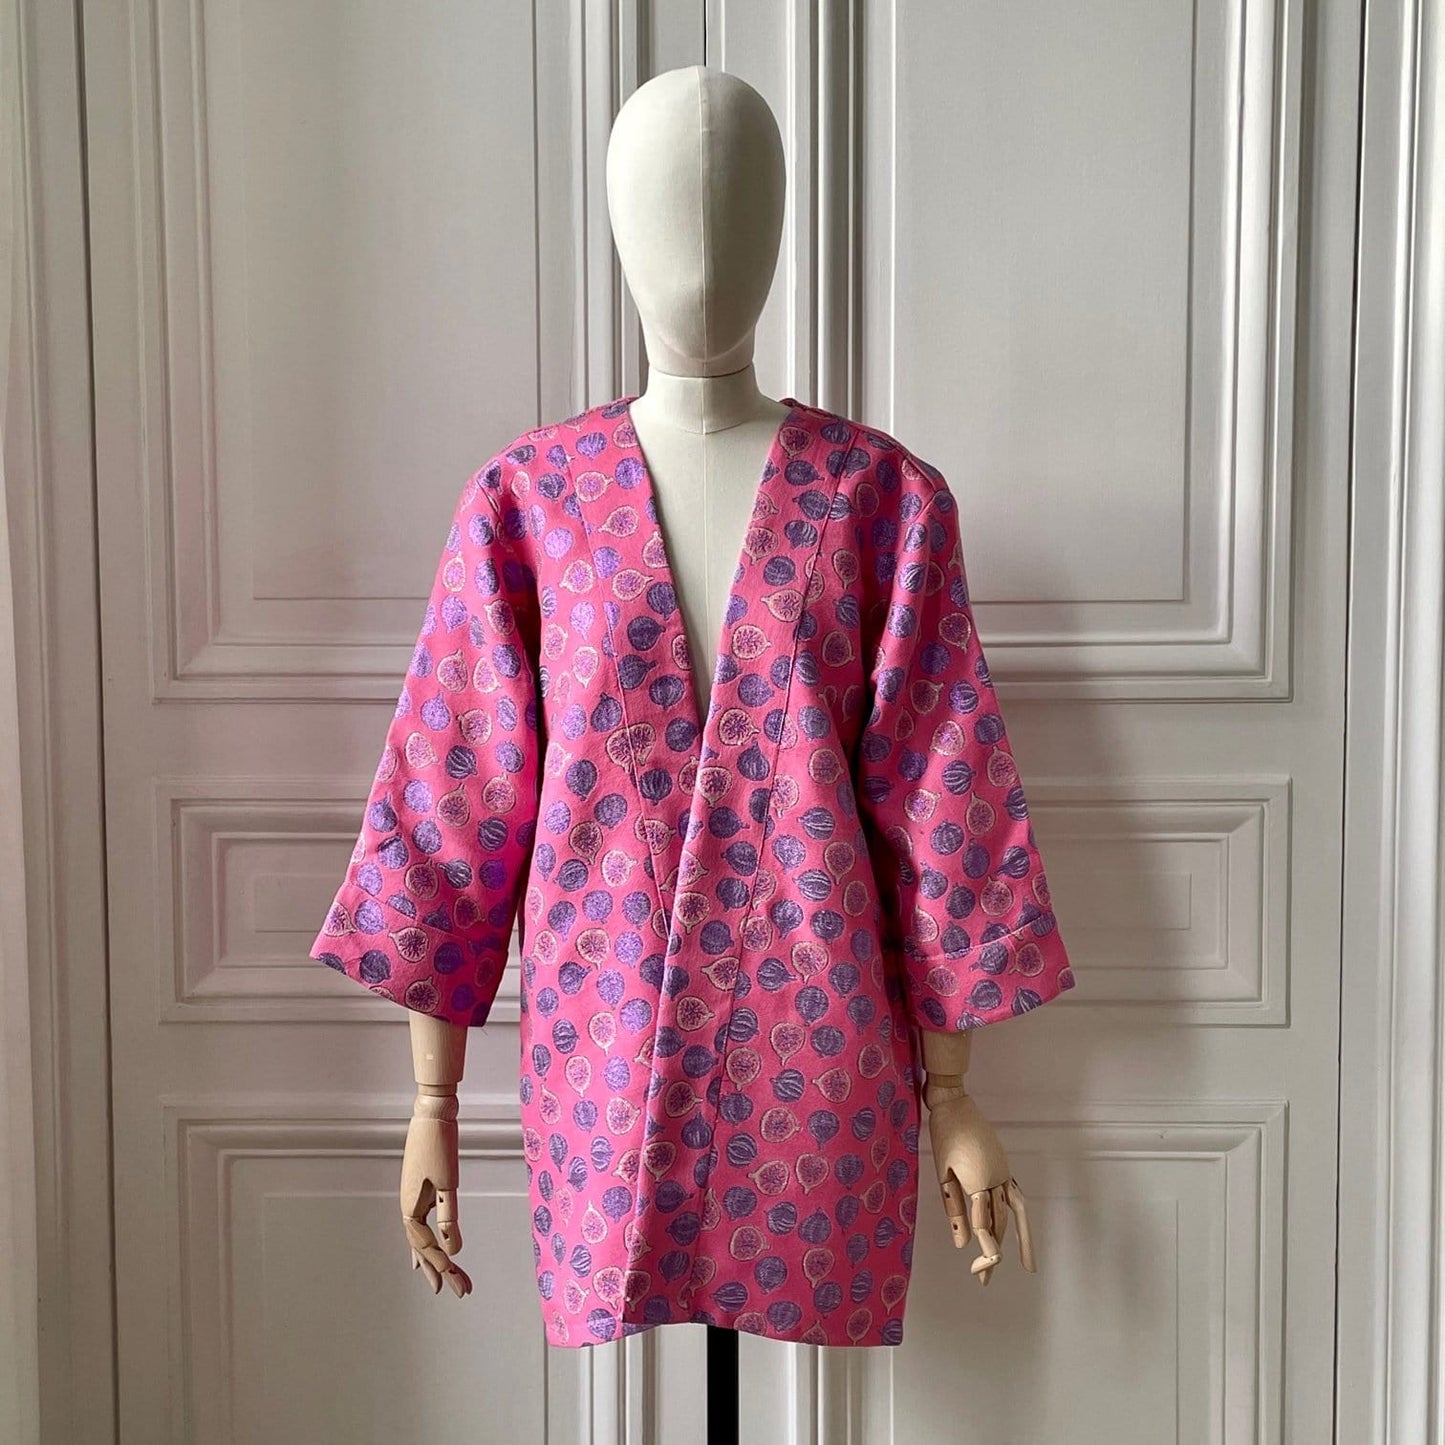 Kimono en tweed rose mauve et argent figues tissé et fabriqué en France